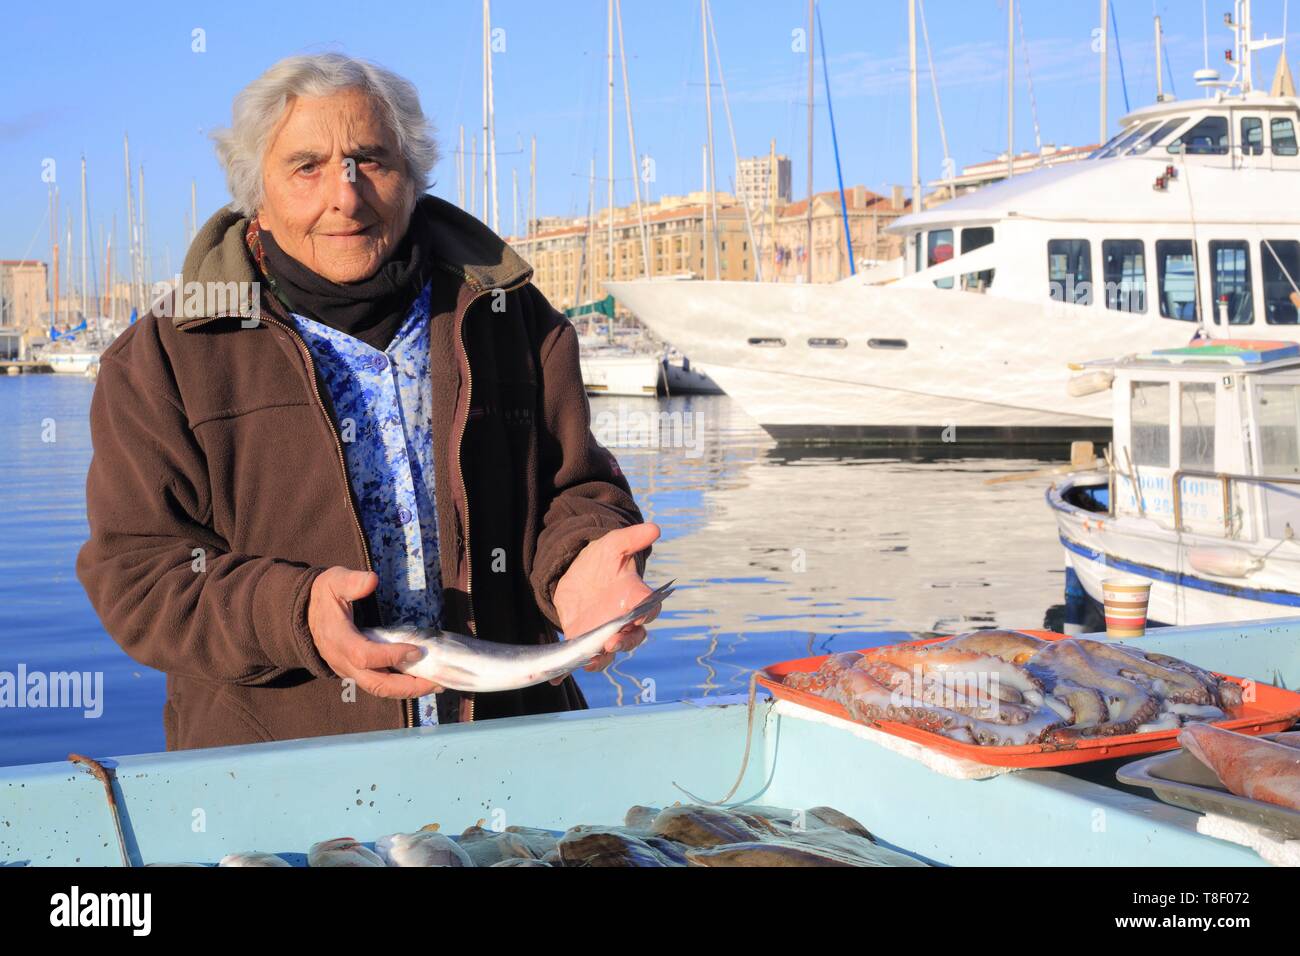 France, Bouches du Rhône, Marseille, Vieux Port, le marché aux poissons, le poissonnier Banque D'Images